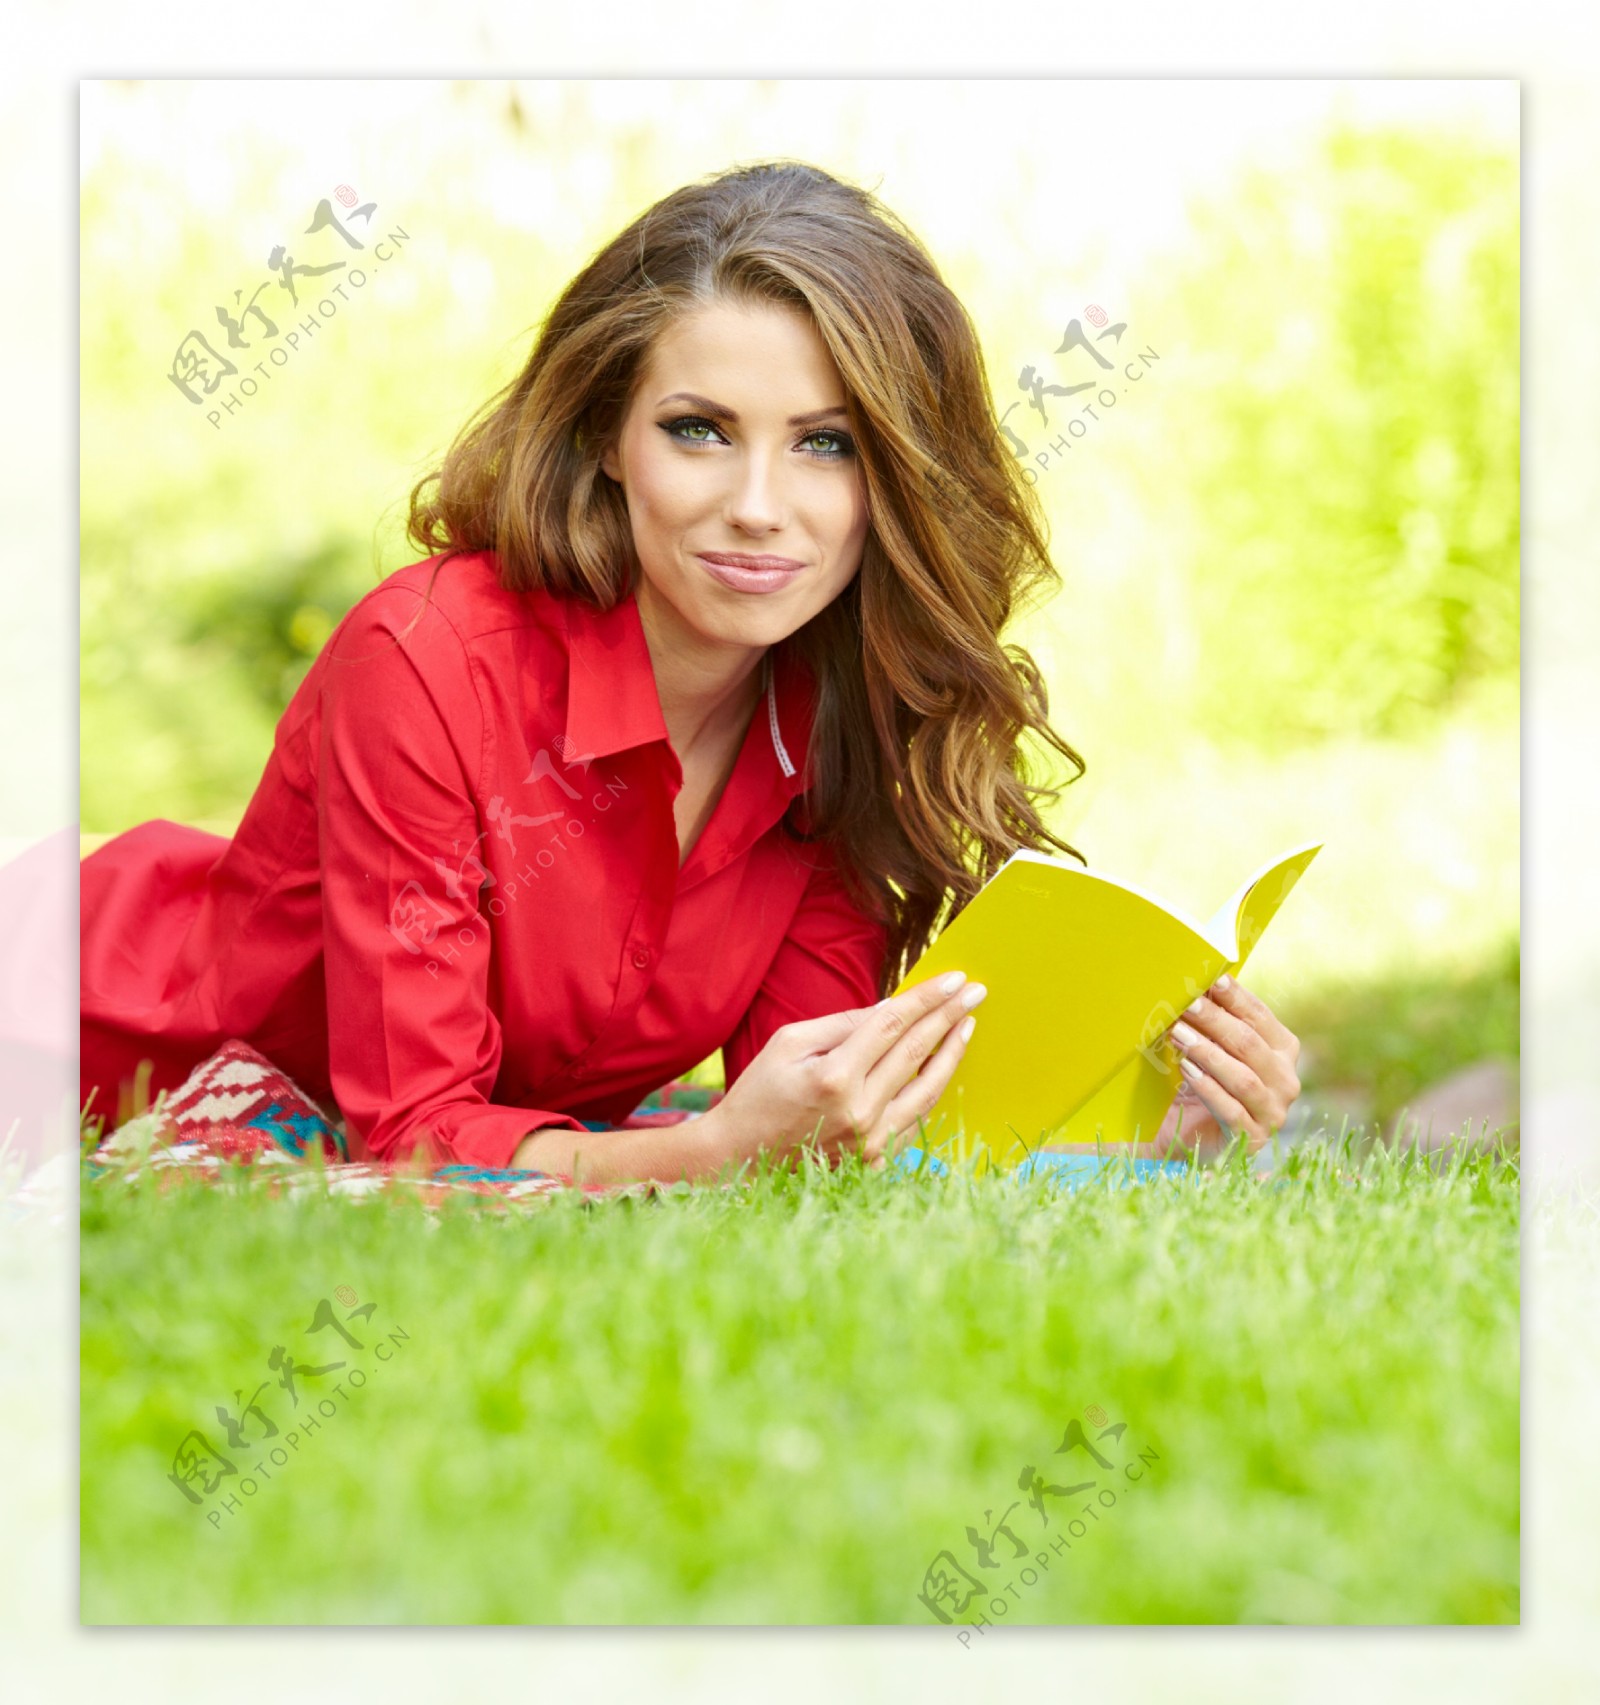 趴在草地上看书的外国美女图片